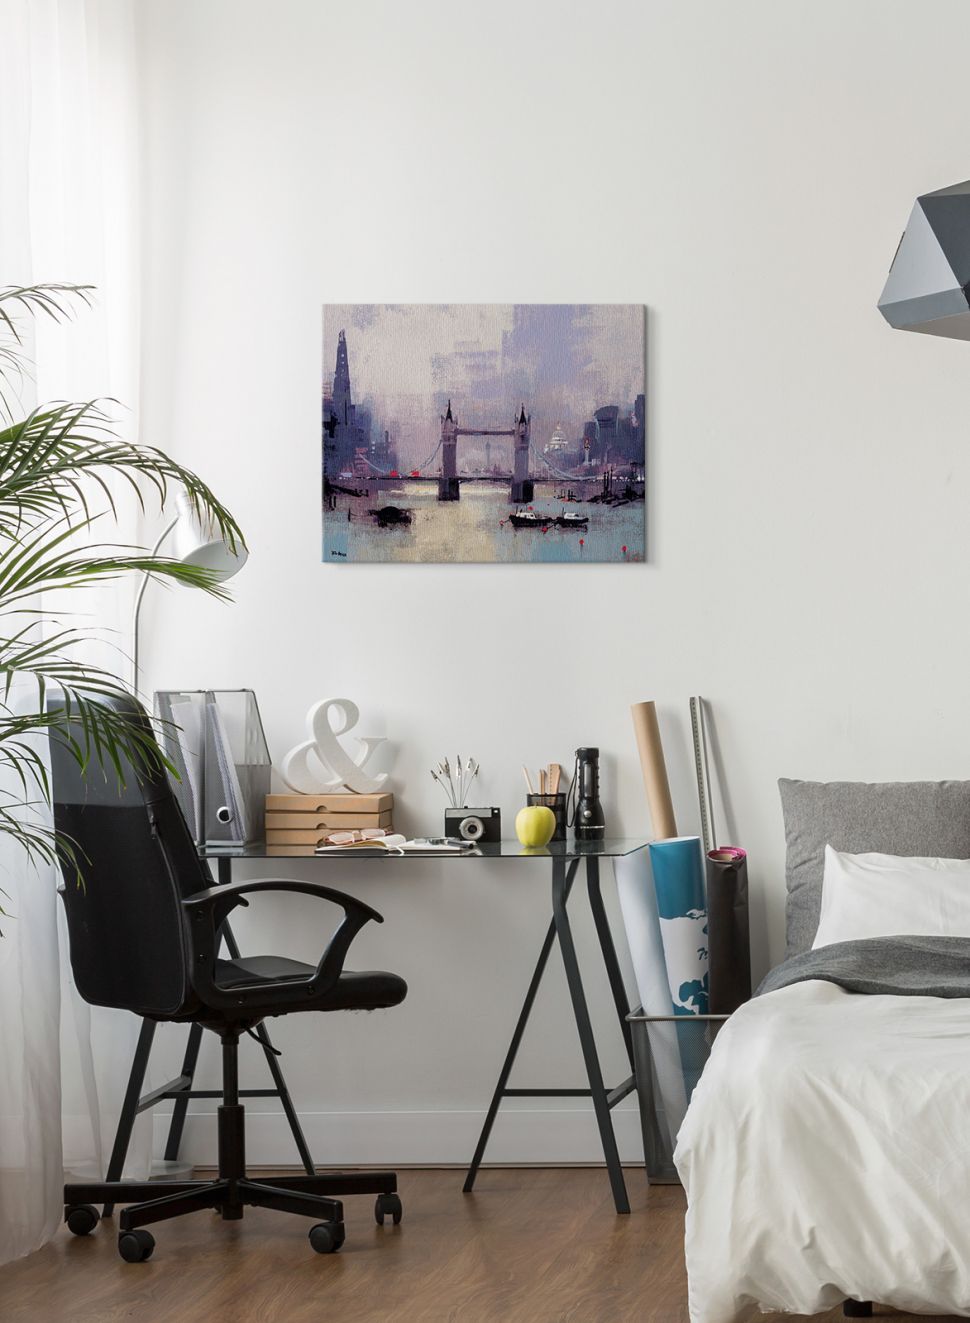 Obraz na płótnie wiszący w nowocześnie urządzonej sypialni przedstawiający Tower Bridge